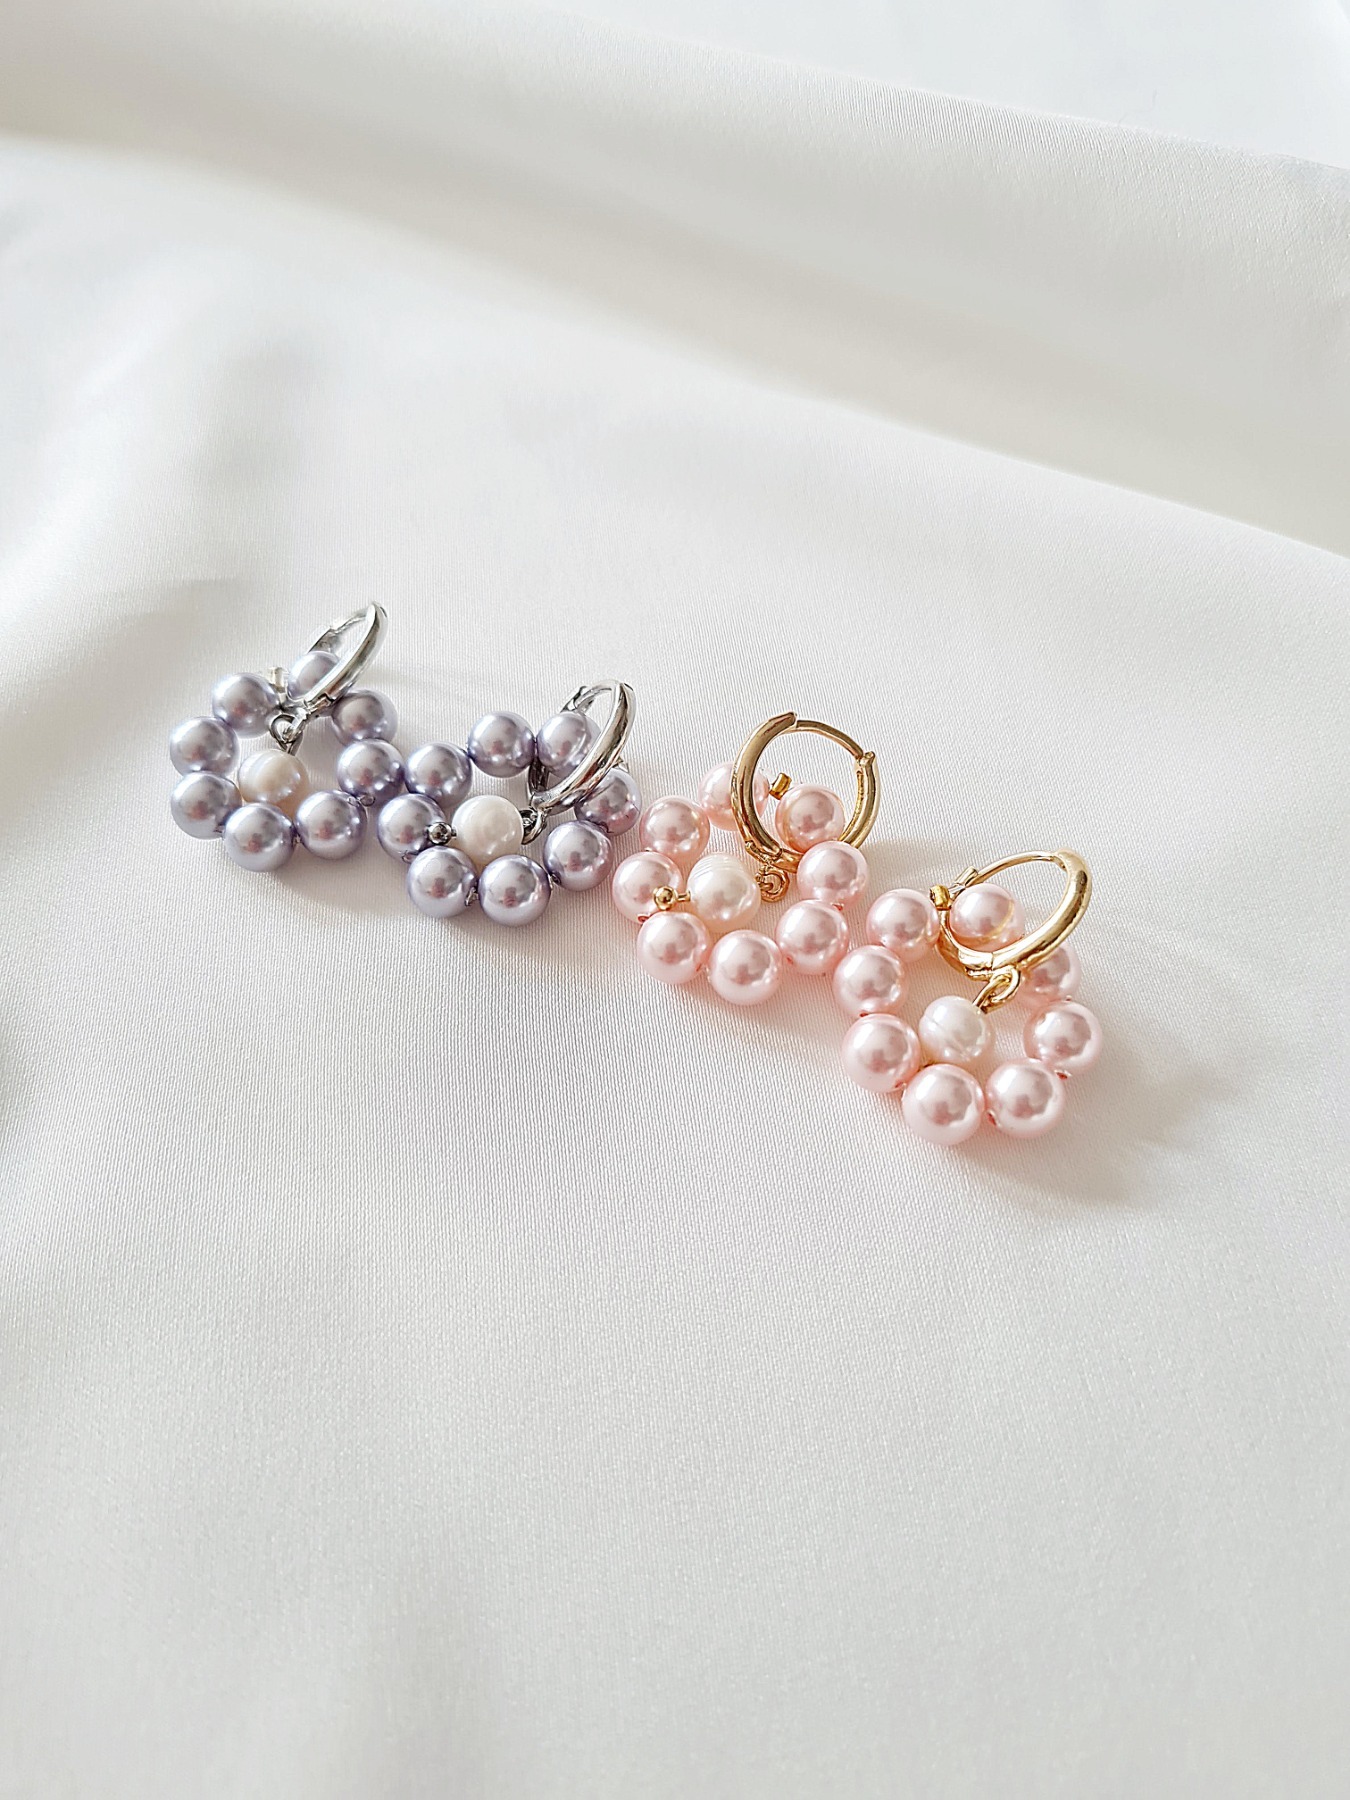 Ohrringe aus Swarovski Crystal Pearls Accessoires elegante Ohrringe